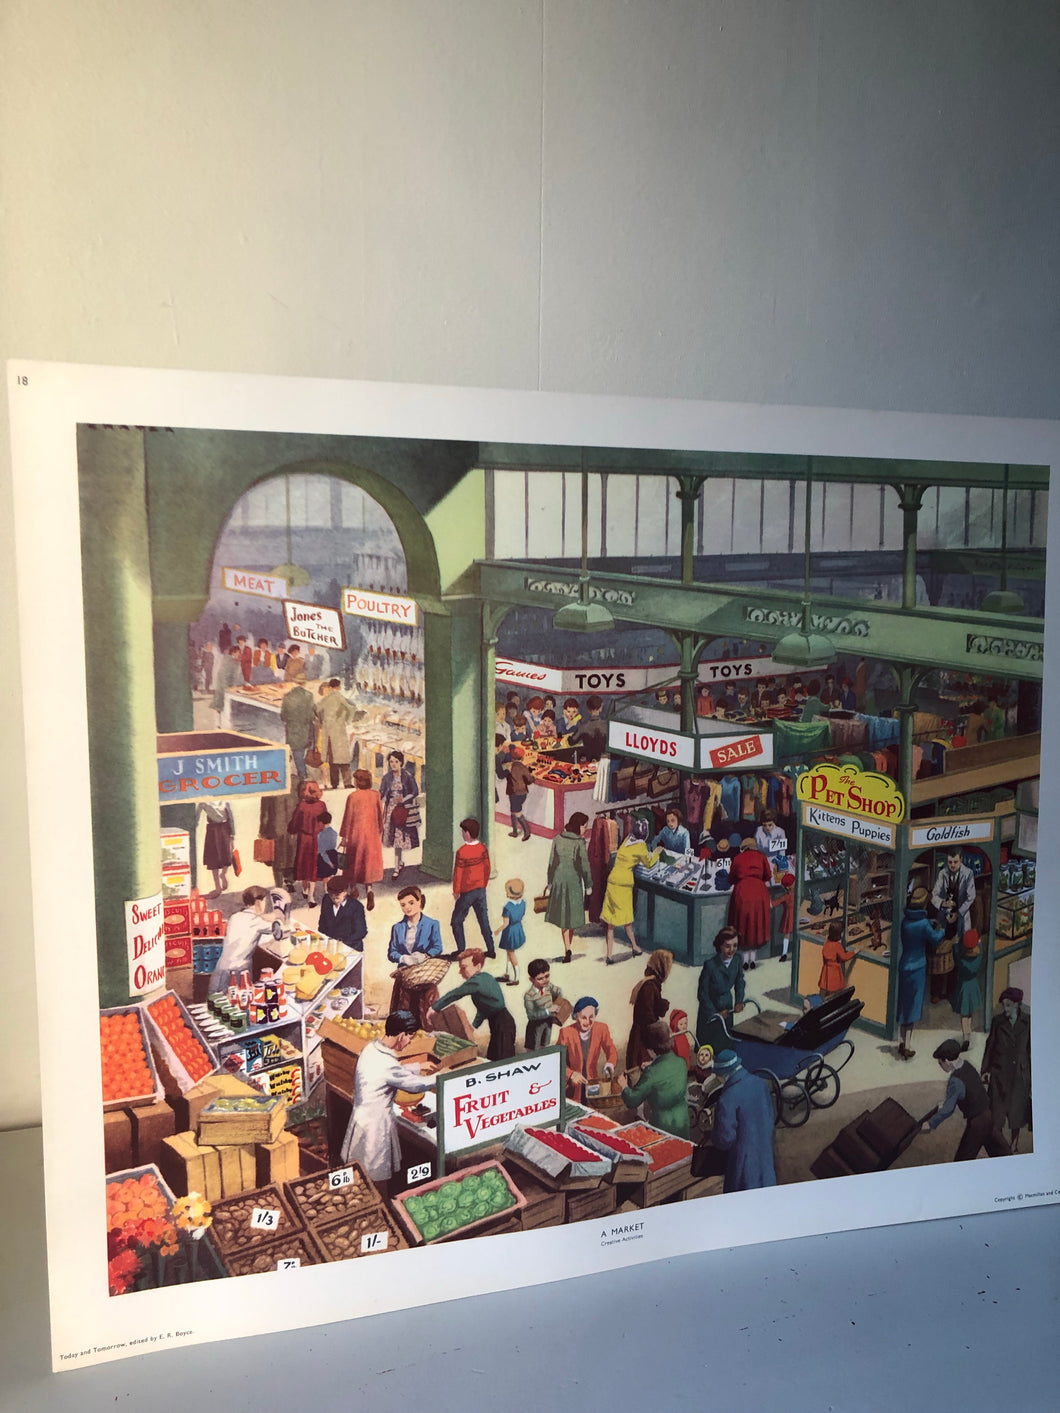 Original 1950s School Poster, ‘A Market'